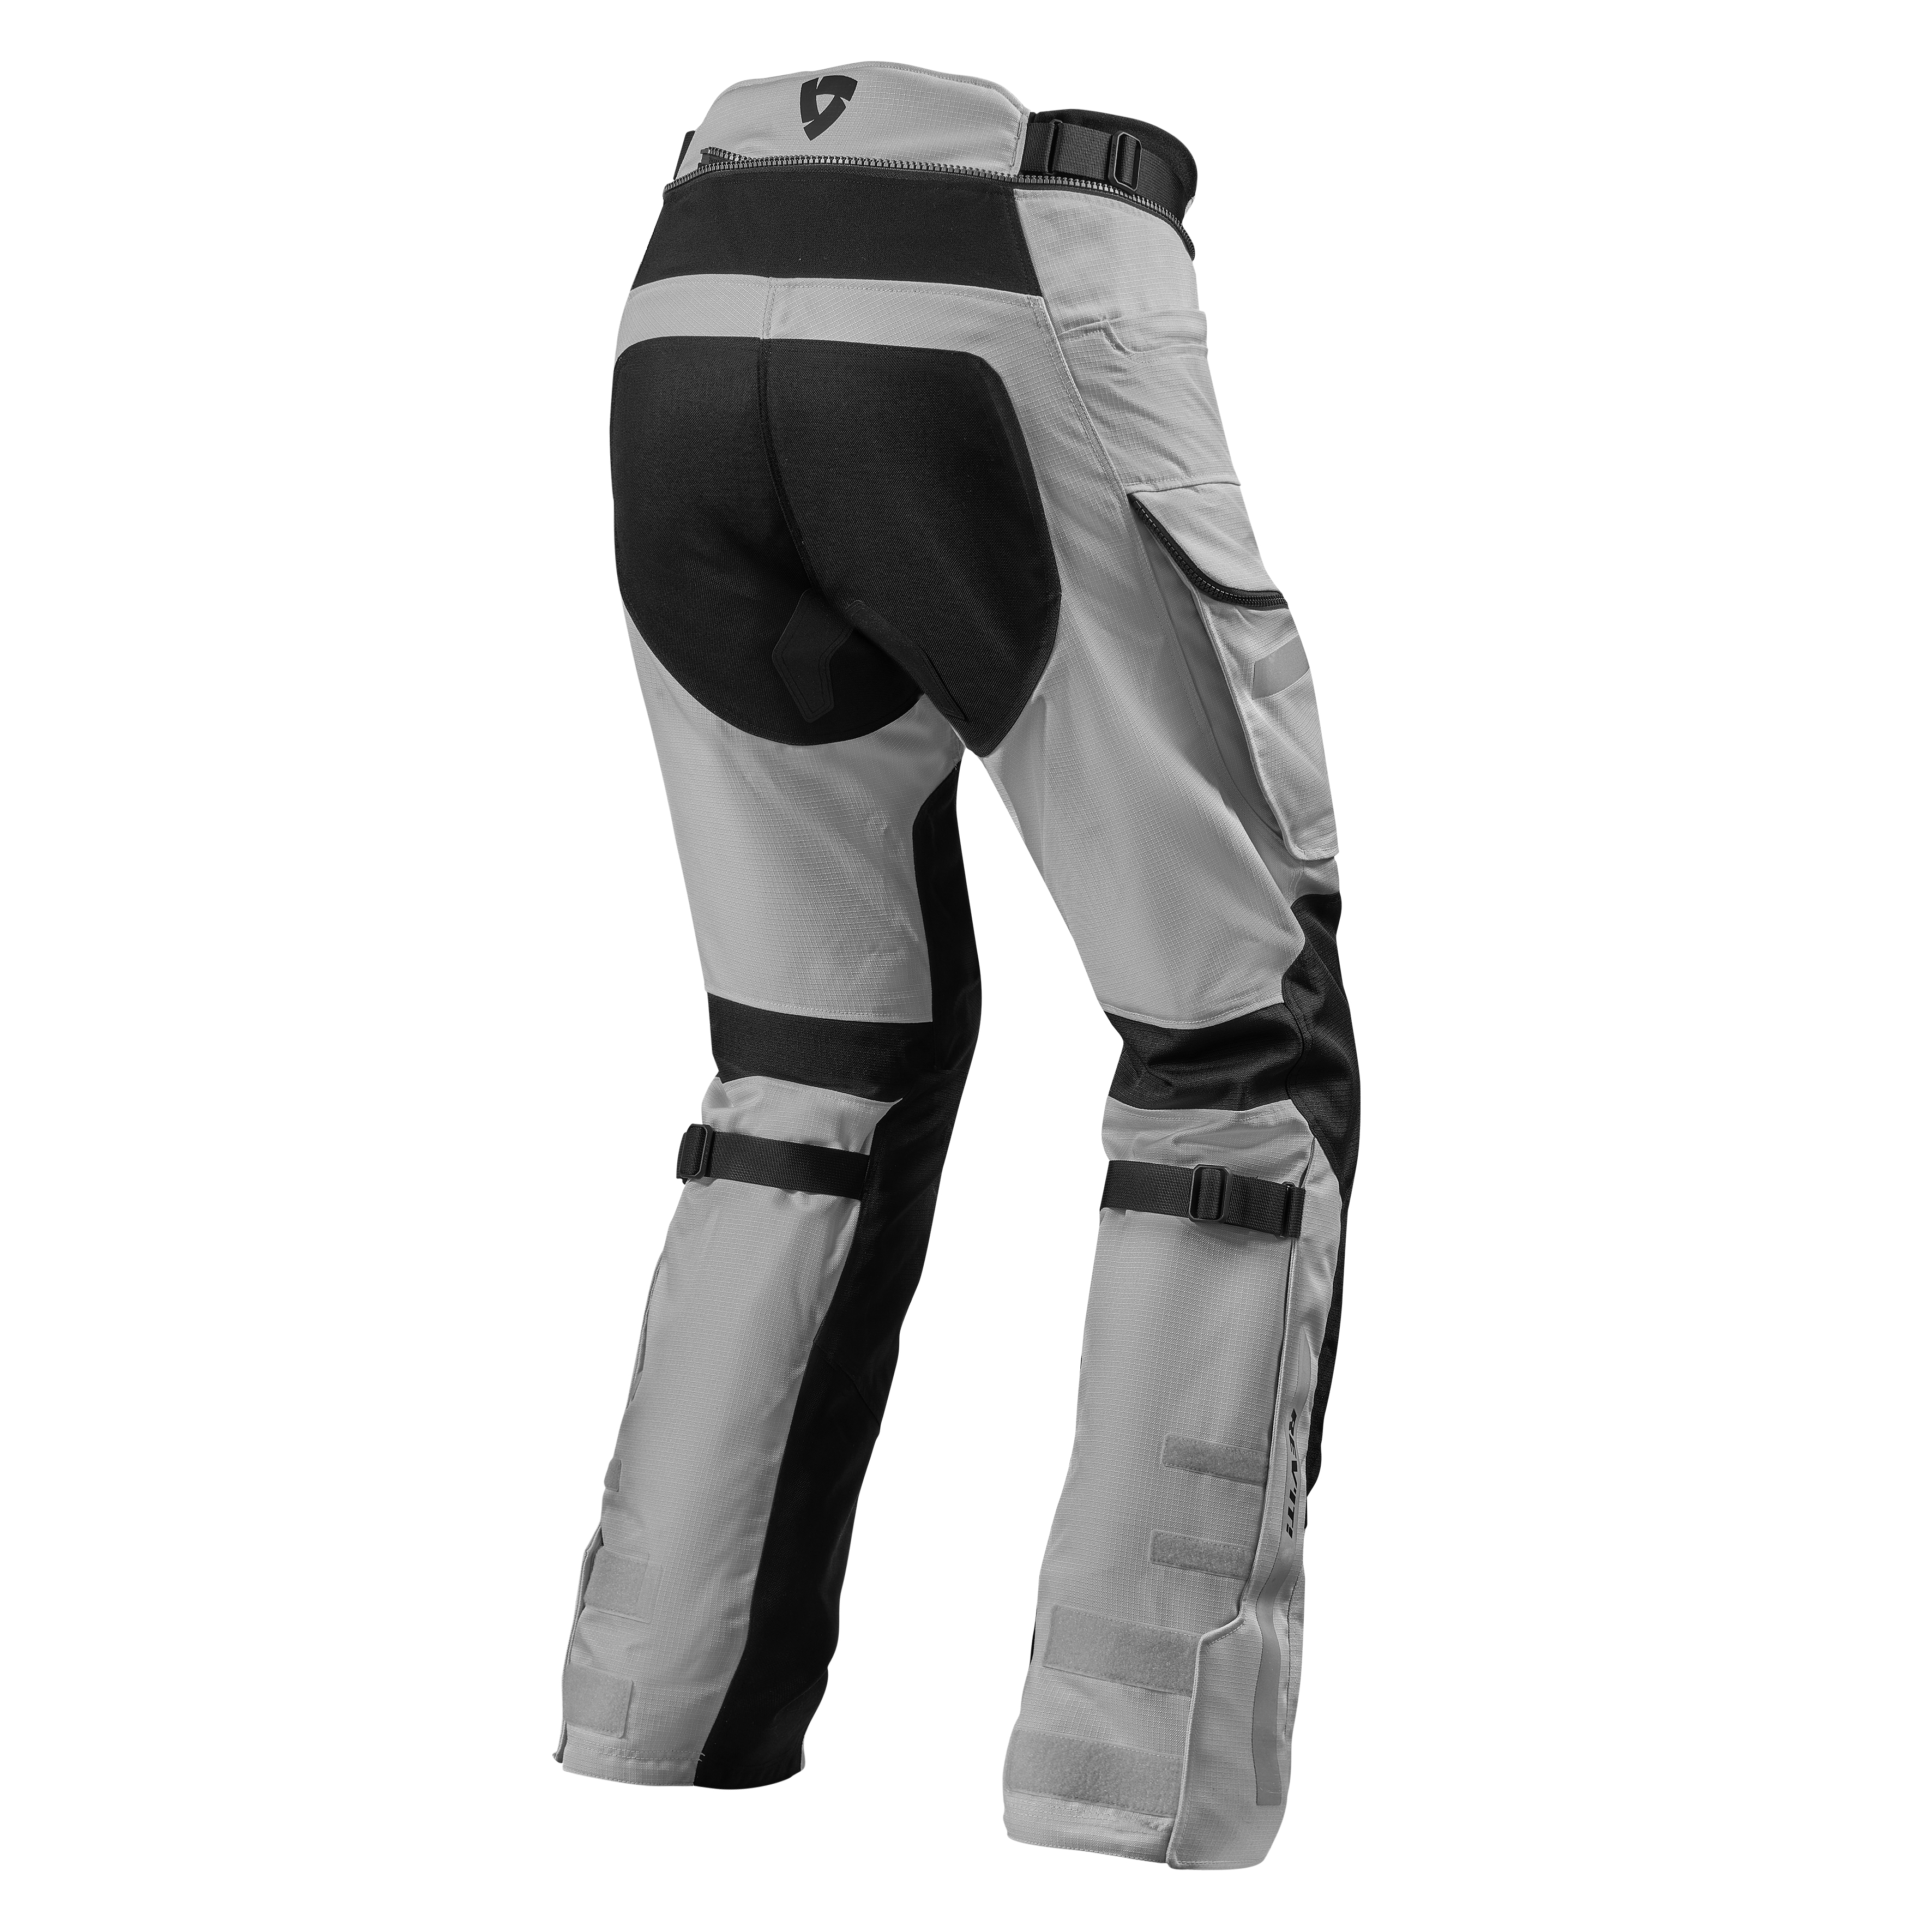 REV'IT! Sand 4 H2O Pants Silver - Black long - Men's textile motorcycle  pants